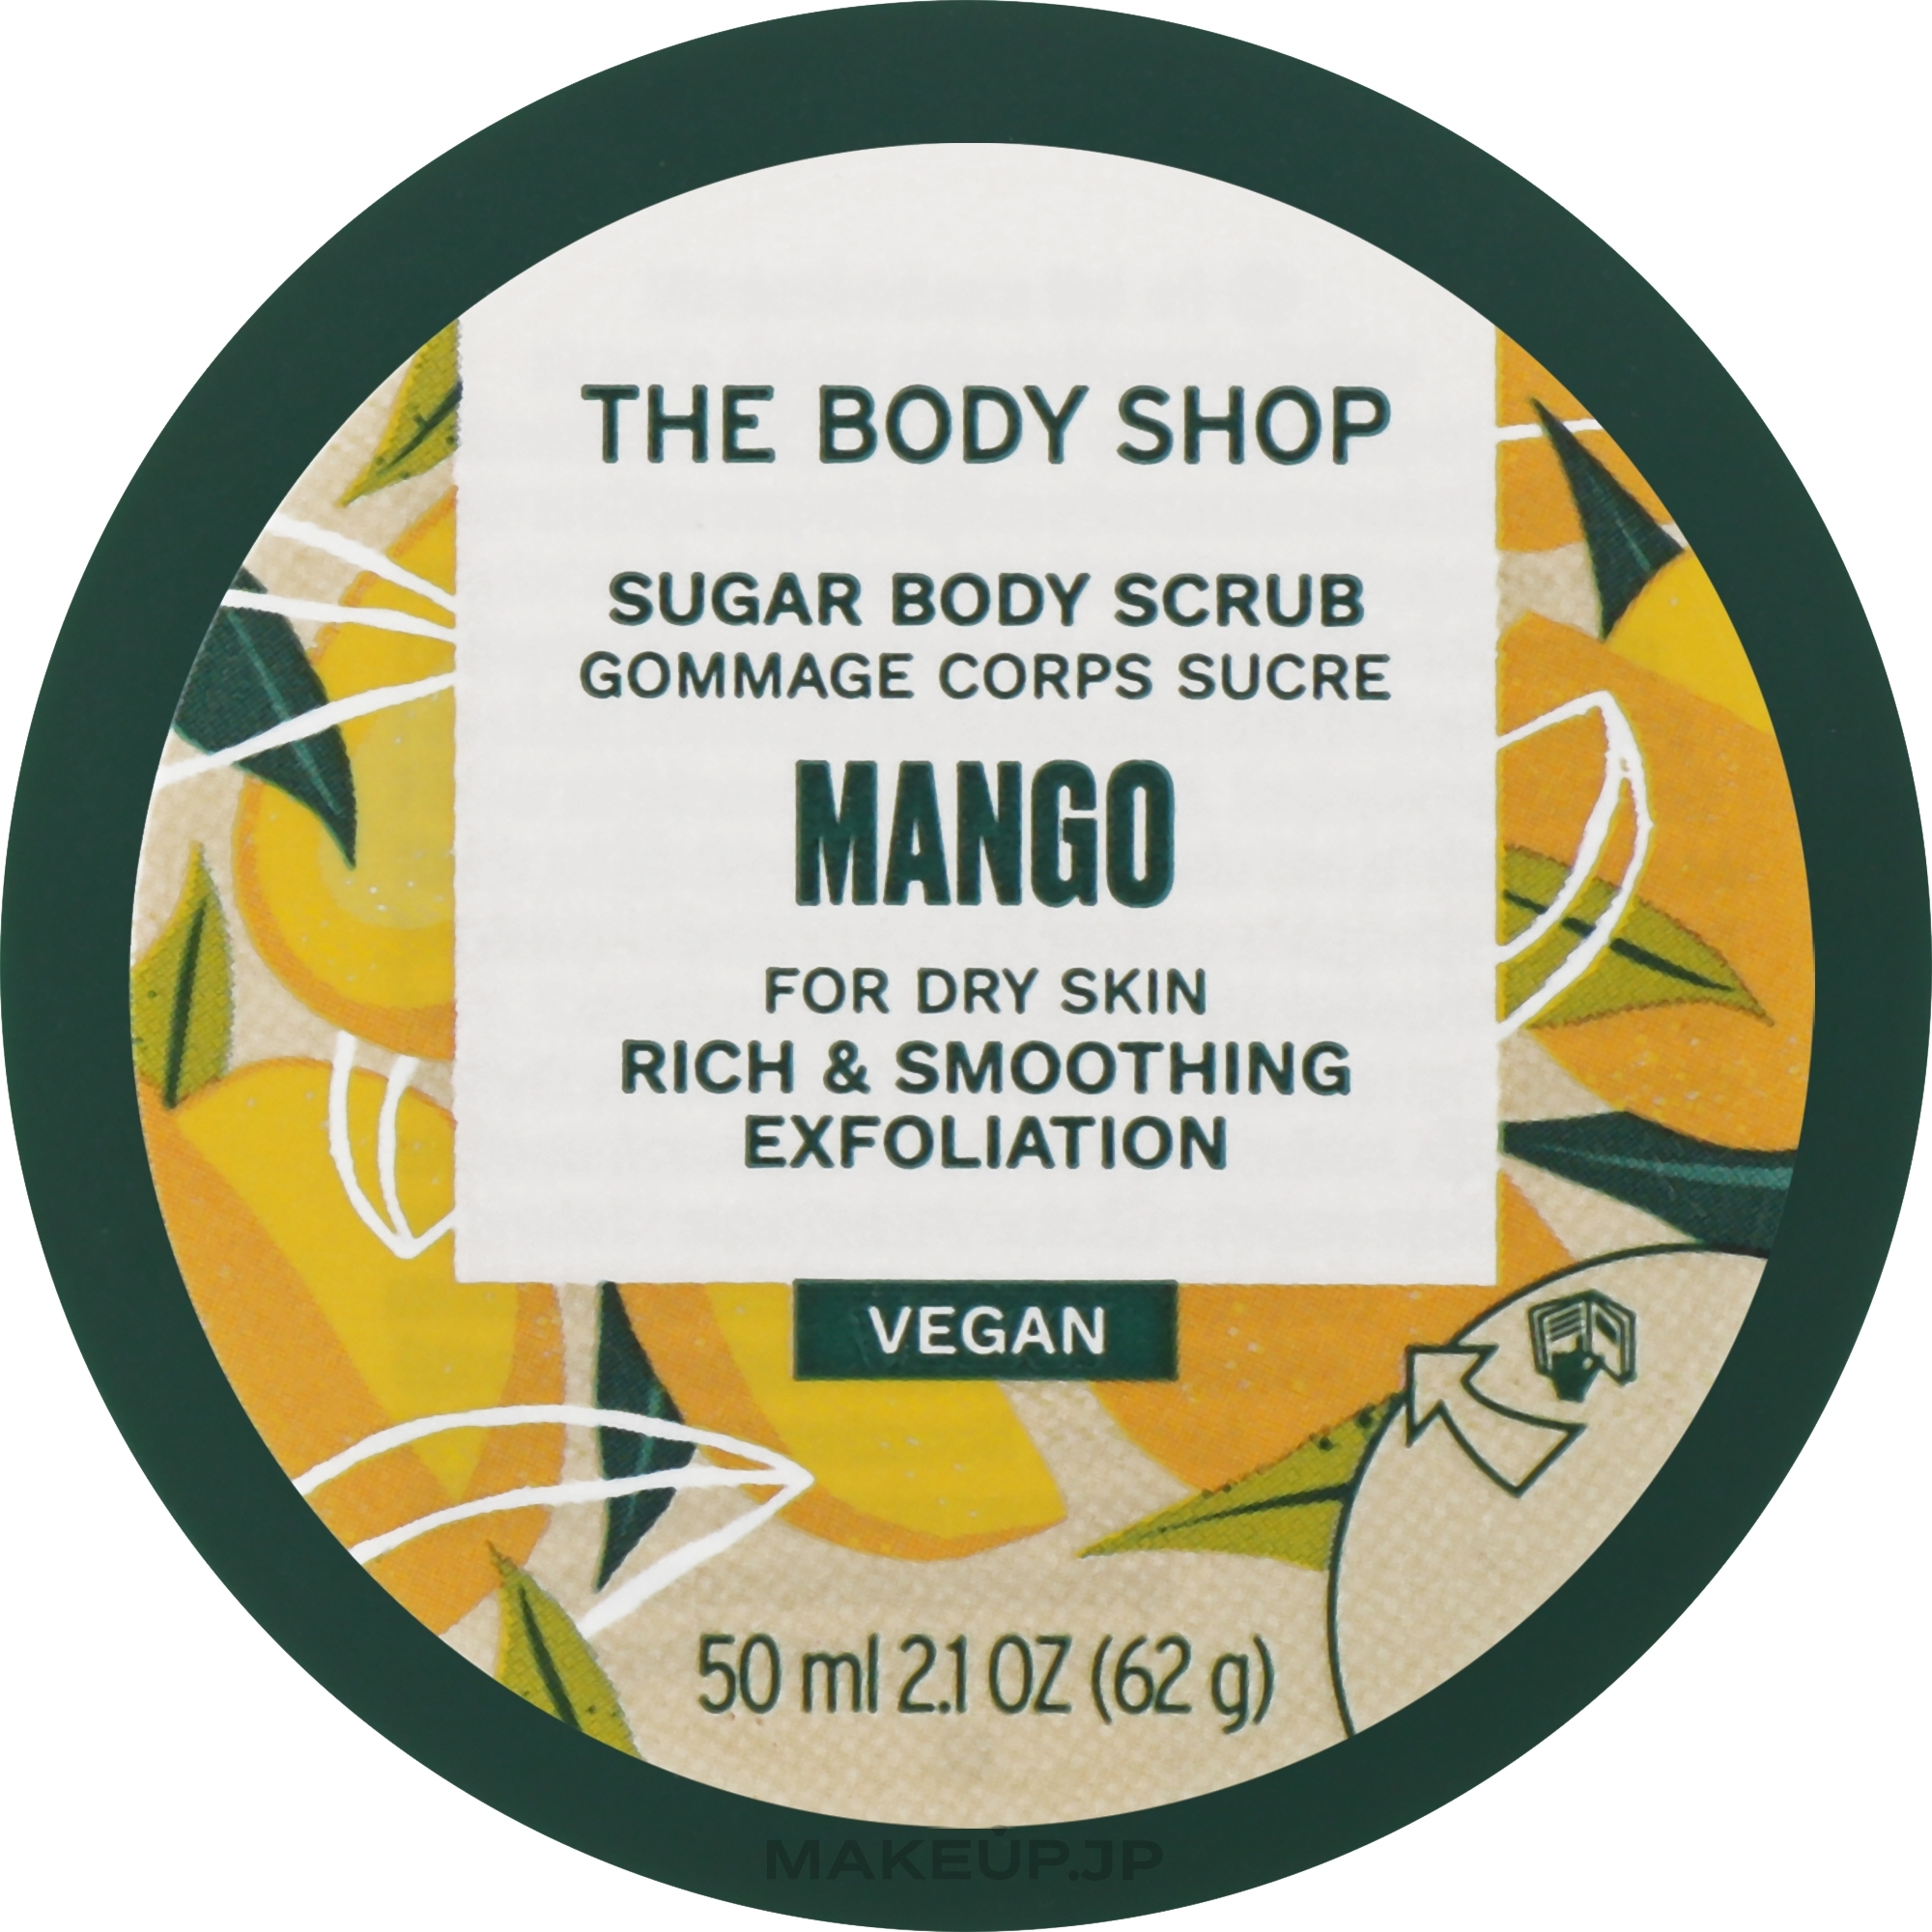 Mango Body Scrub - The Body Shop Mango Sugar Body Scrub Vegan — photo 50 ml